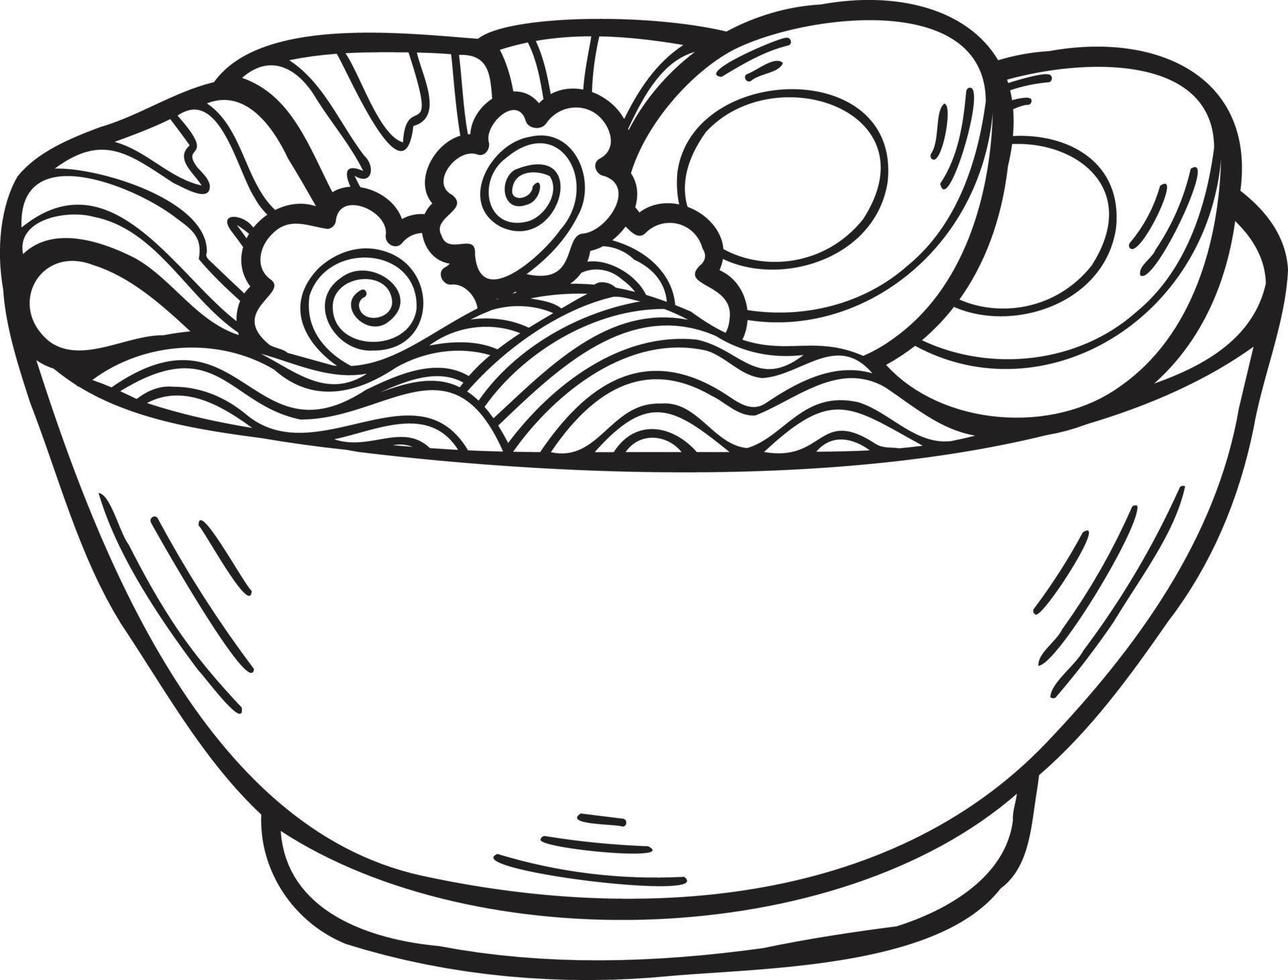 macarrão desenhado à mão ou ramen ilustração de comida chinesa e japonesa vetor